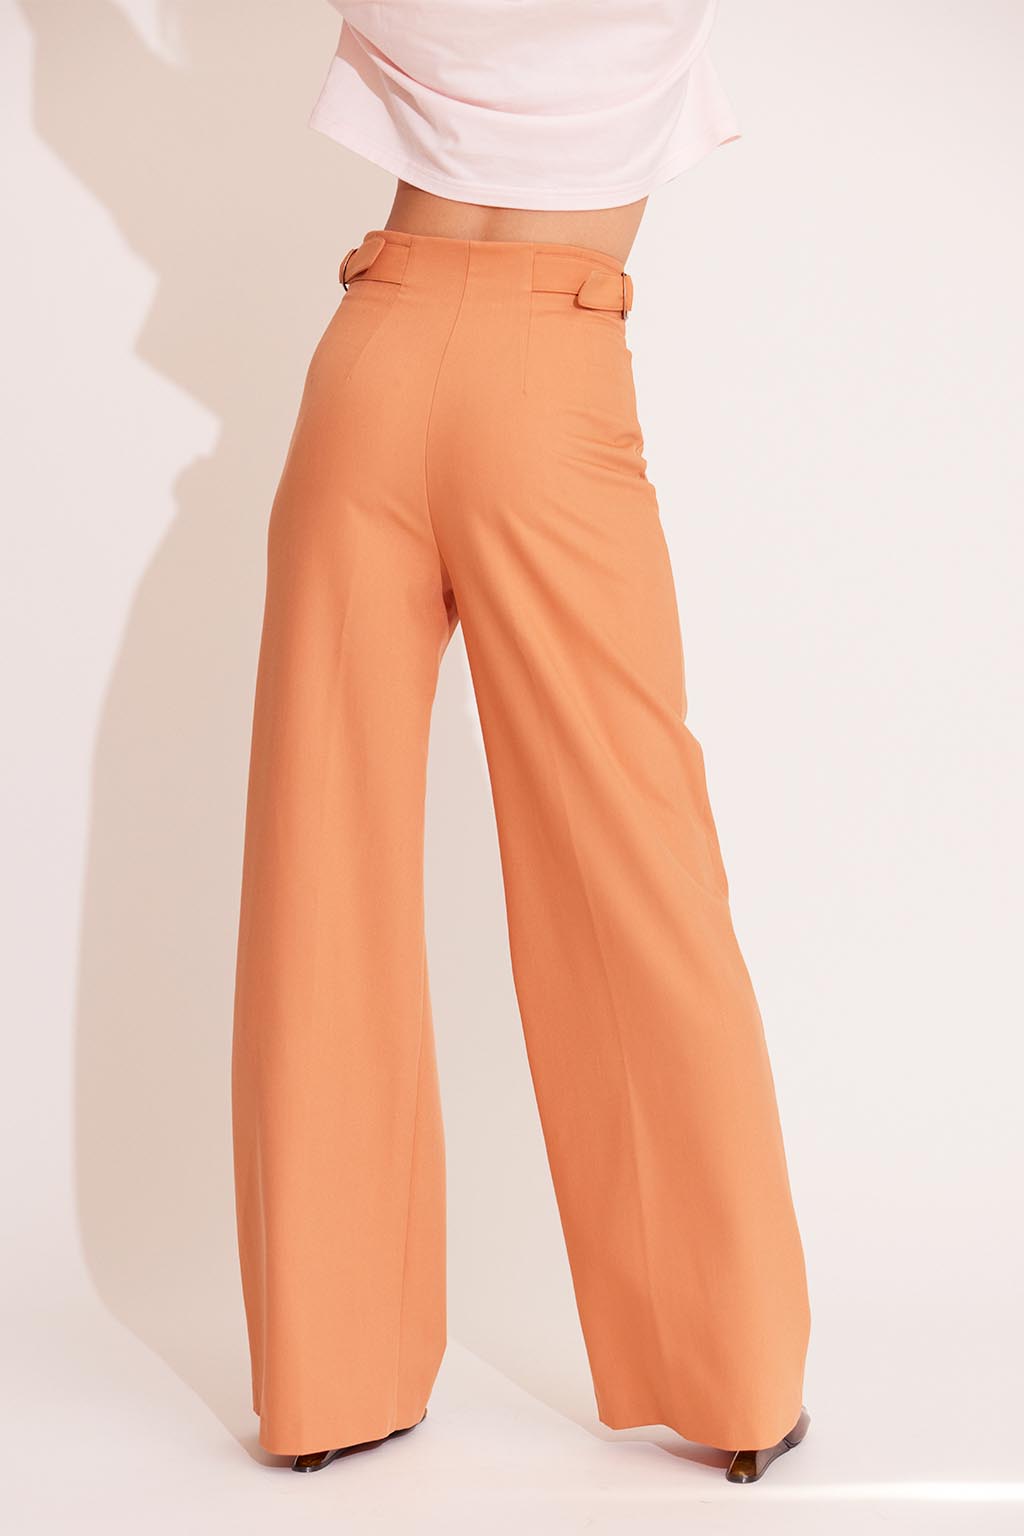 Waist Belted Color Pants Orange 5